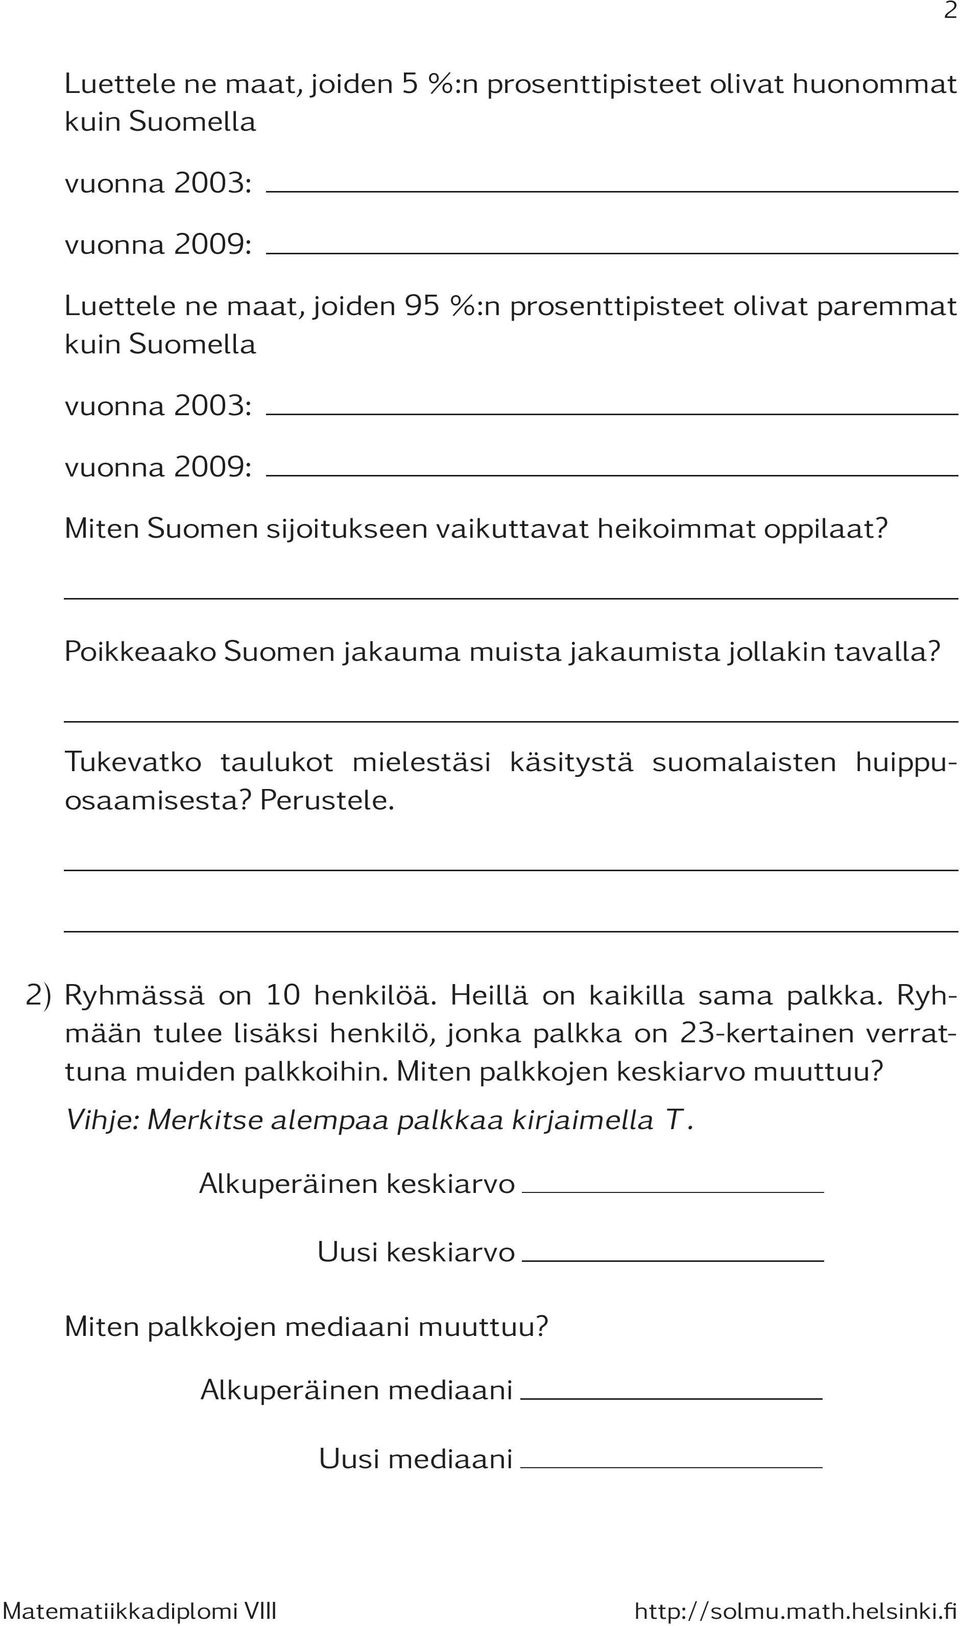 Tukevatko taulukot mielestäsi käsitystä suomalaisten huippuosaamisesta? Perustele. 2) Ryhmässä on 10 henkilöä. Heillä on kaikilla sama palkka.